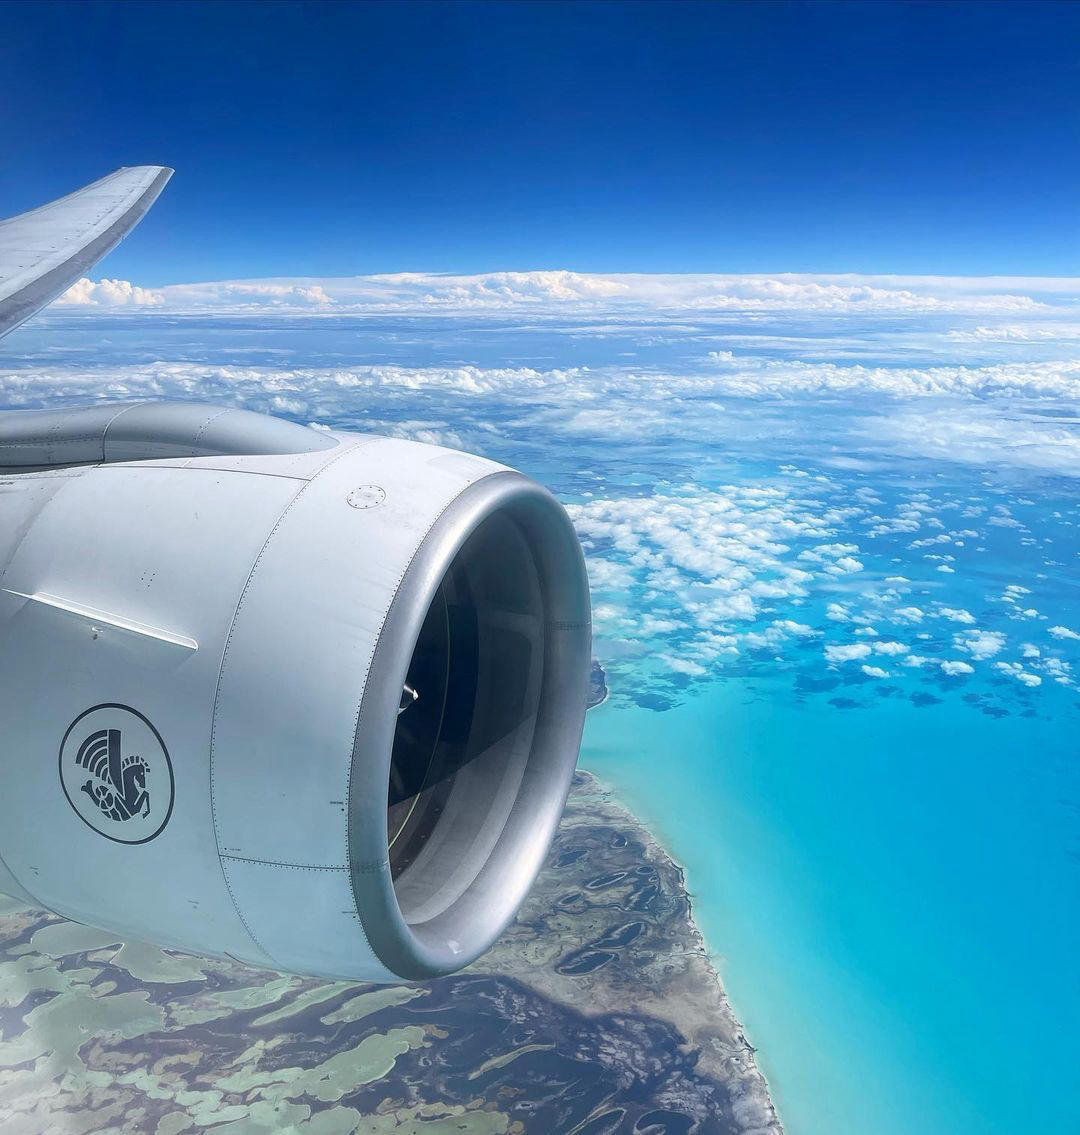 Air France - Les plus belles vues sont toujours celles prises du ciel